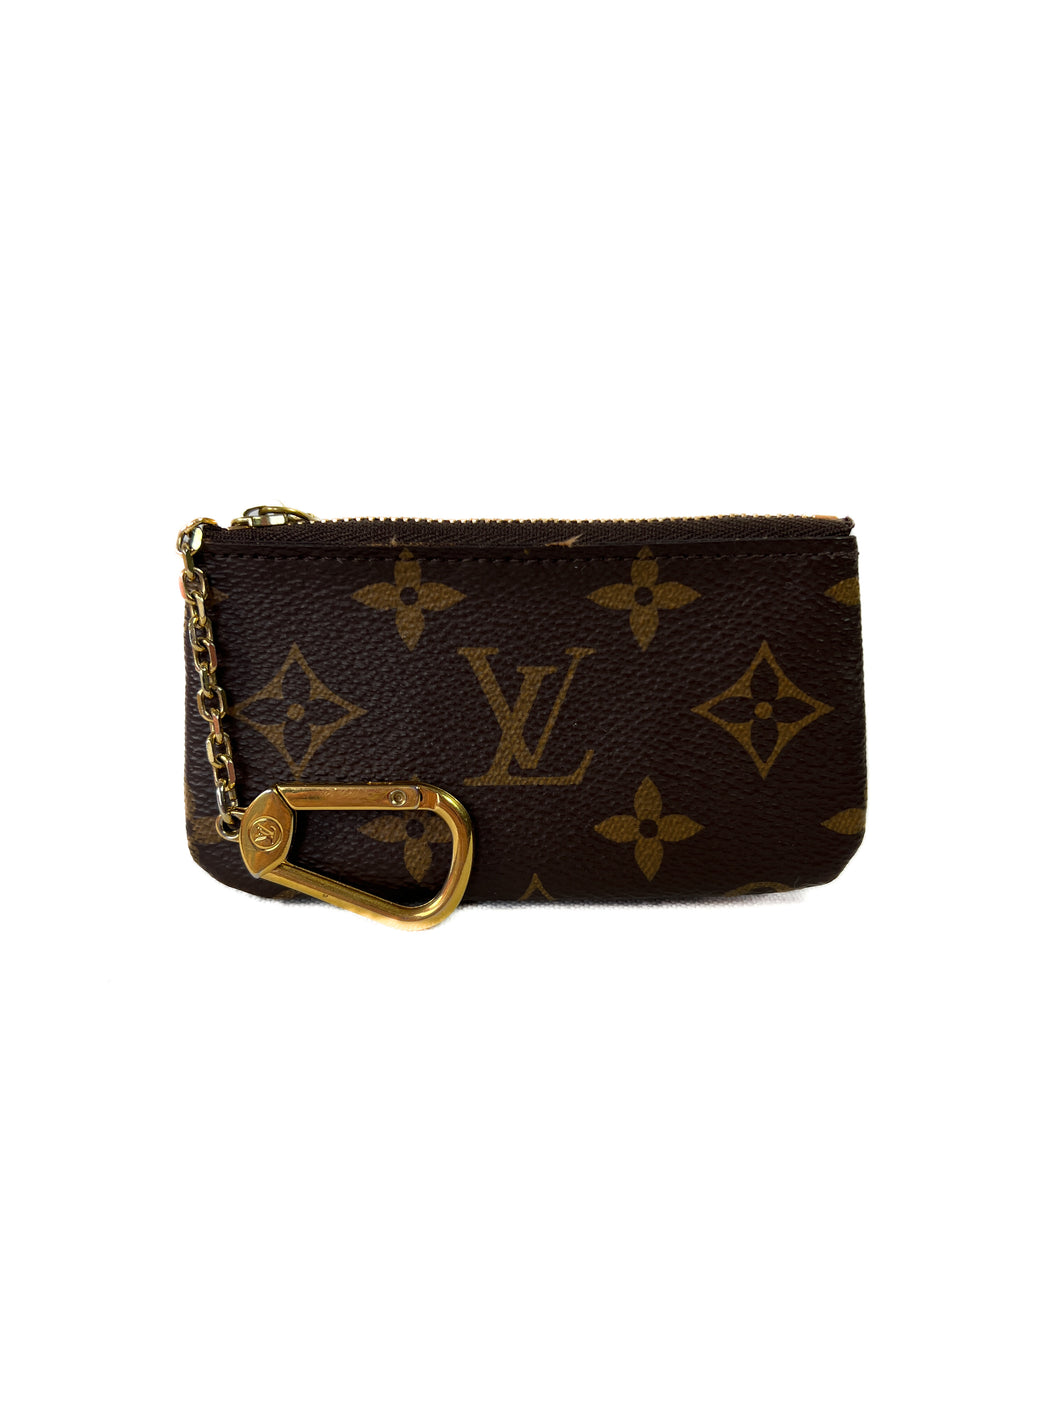 Louis Vuitton monogram key pouch